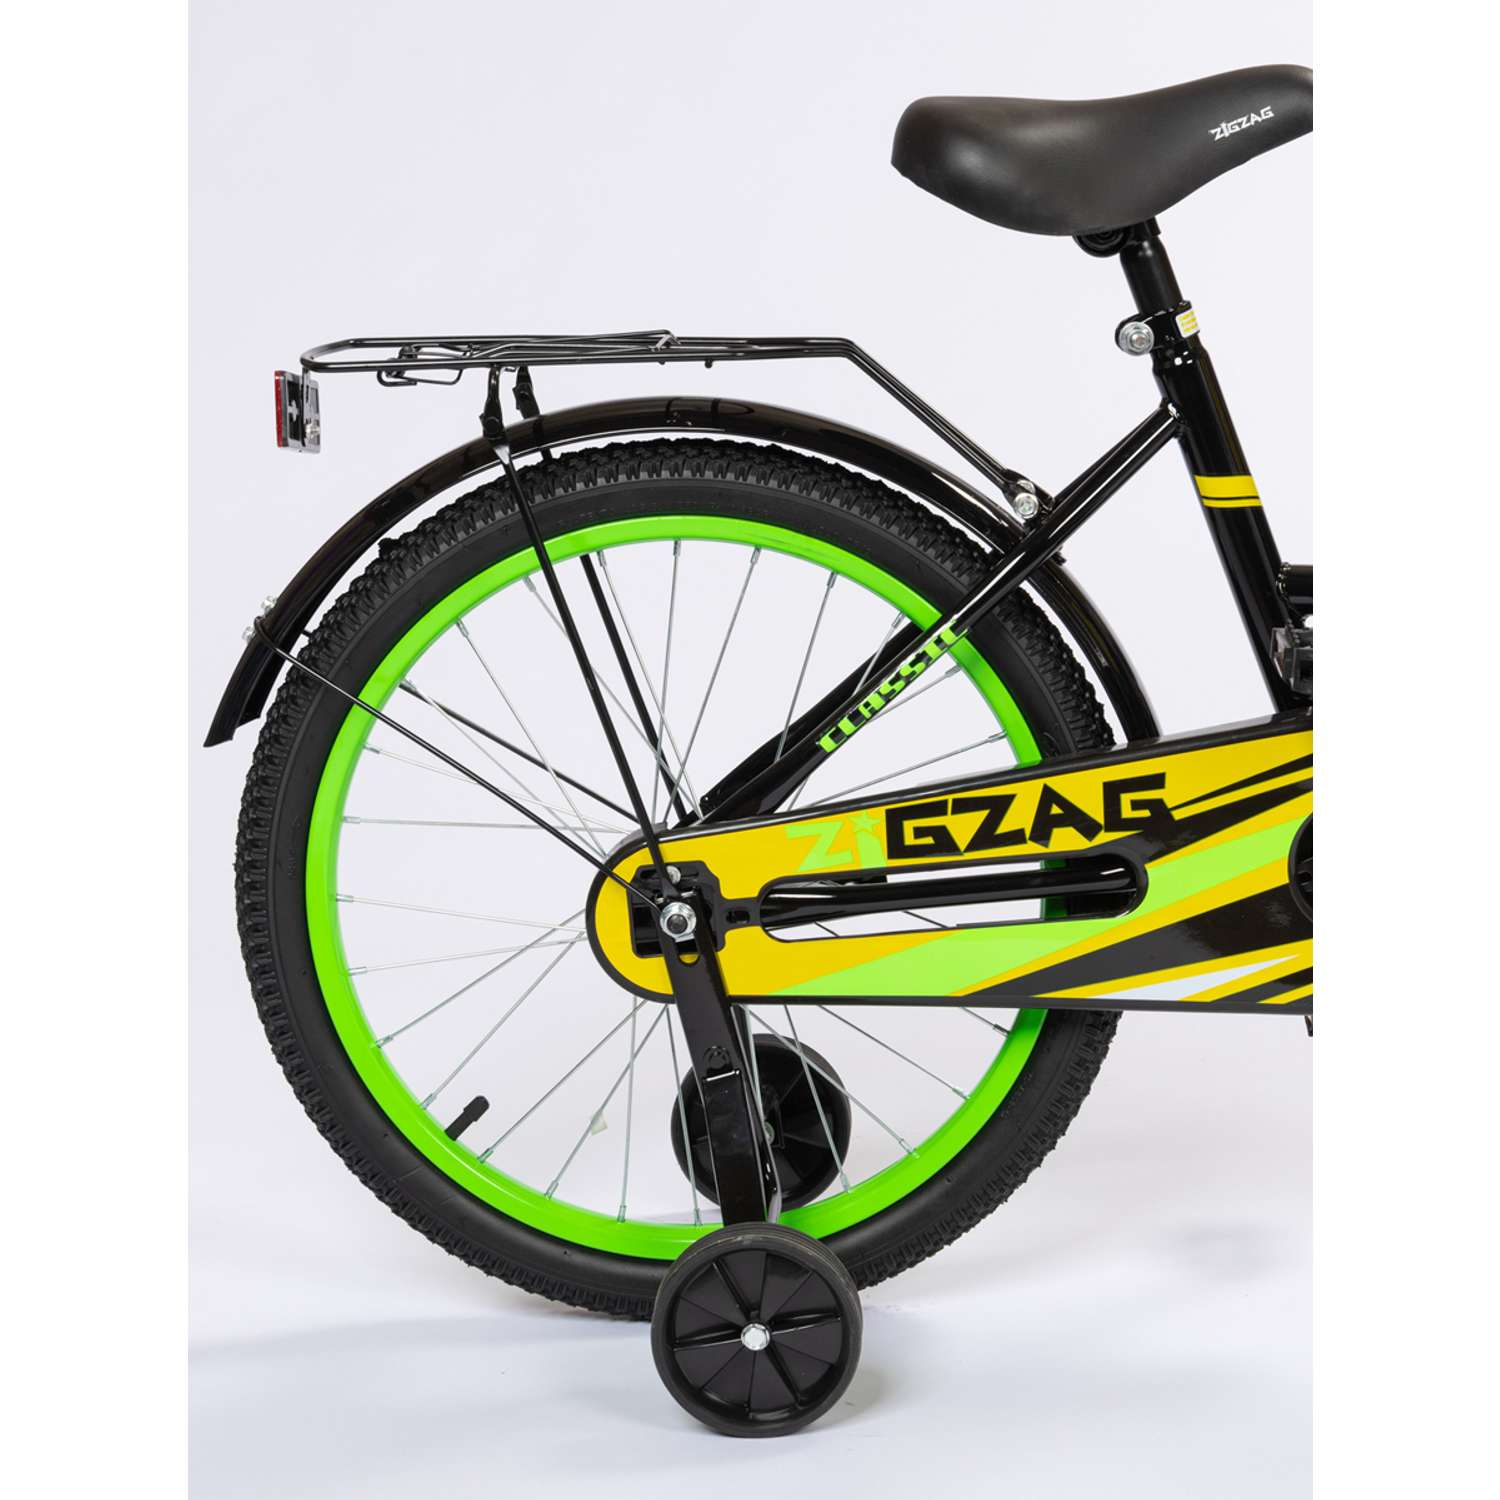 Велосипед ZigZag CLASSIC черный желтый зеленый 18 дюймов - фото 3